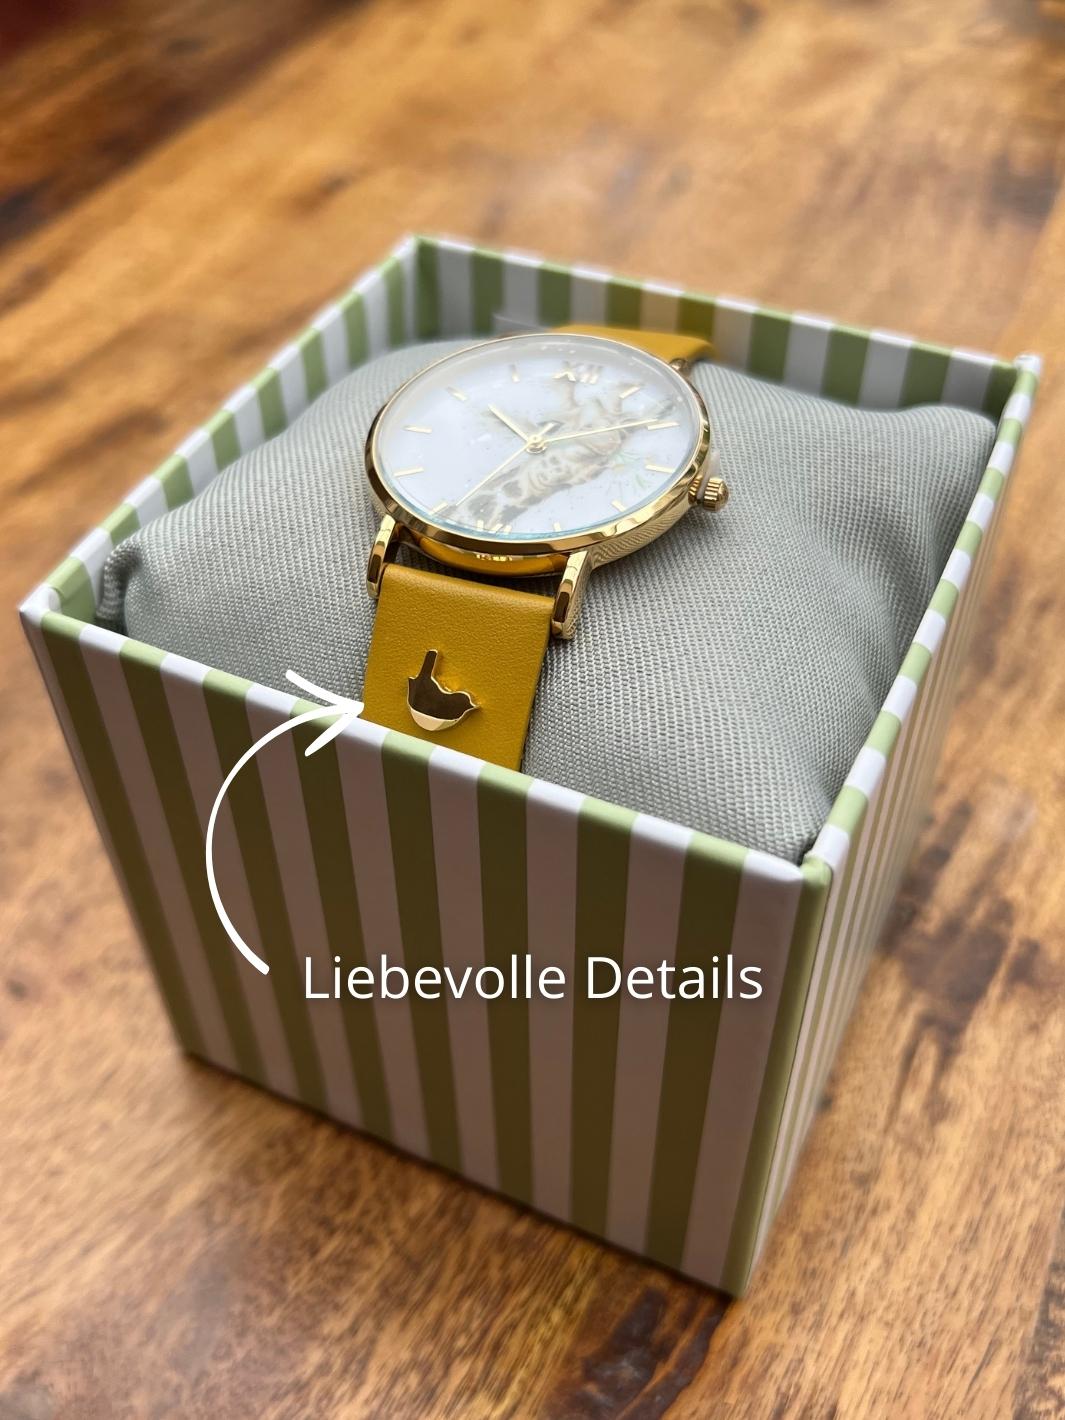 Wrendale Designs Armbanduhr Giraffe mit liebevollen Details